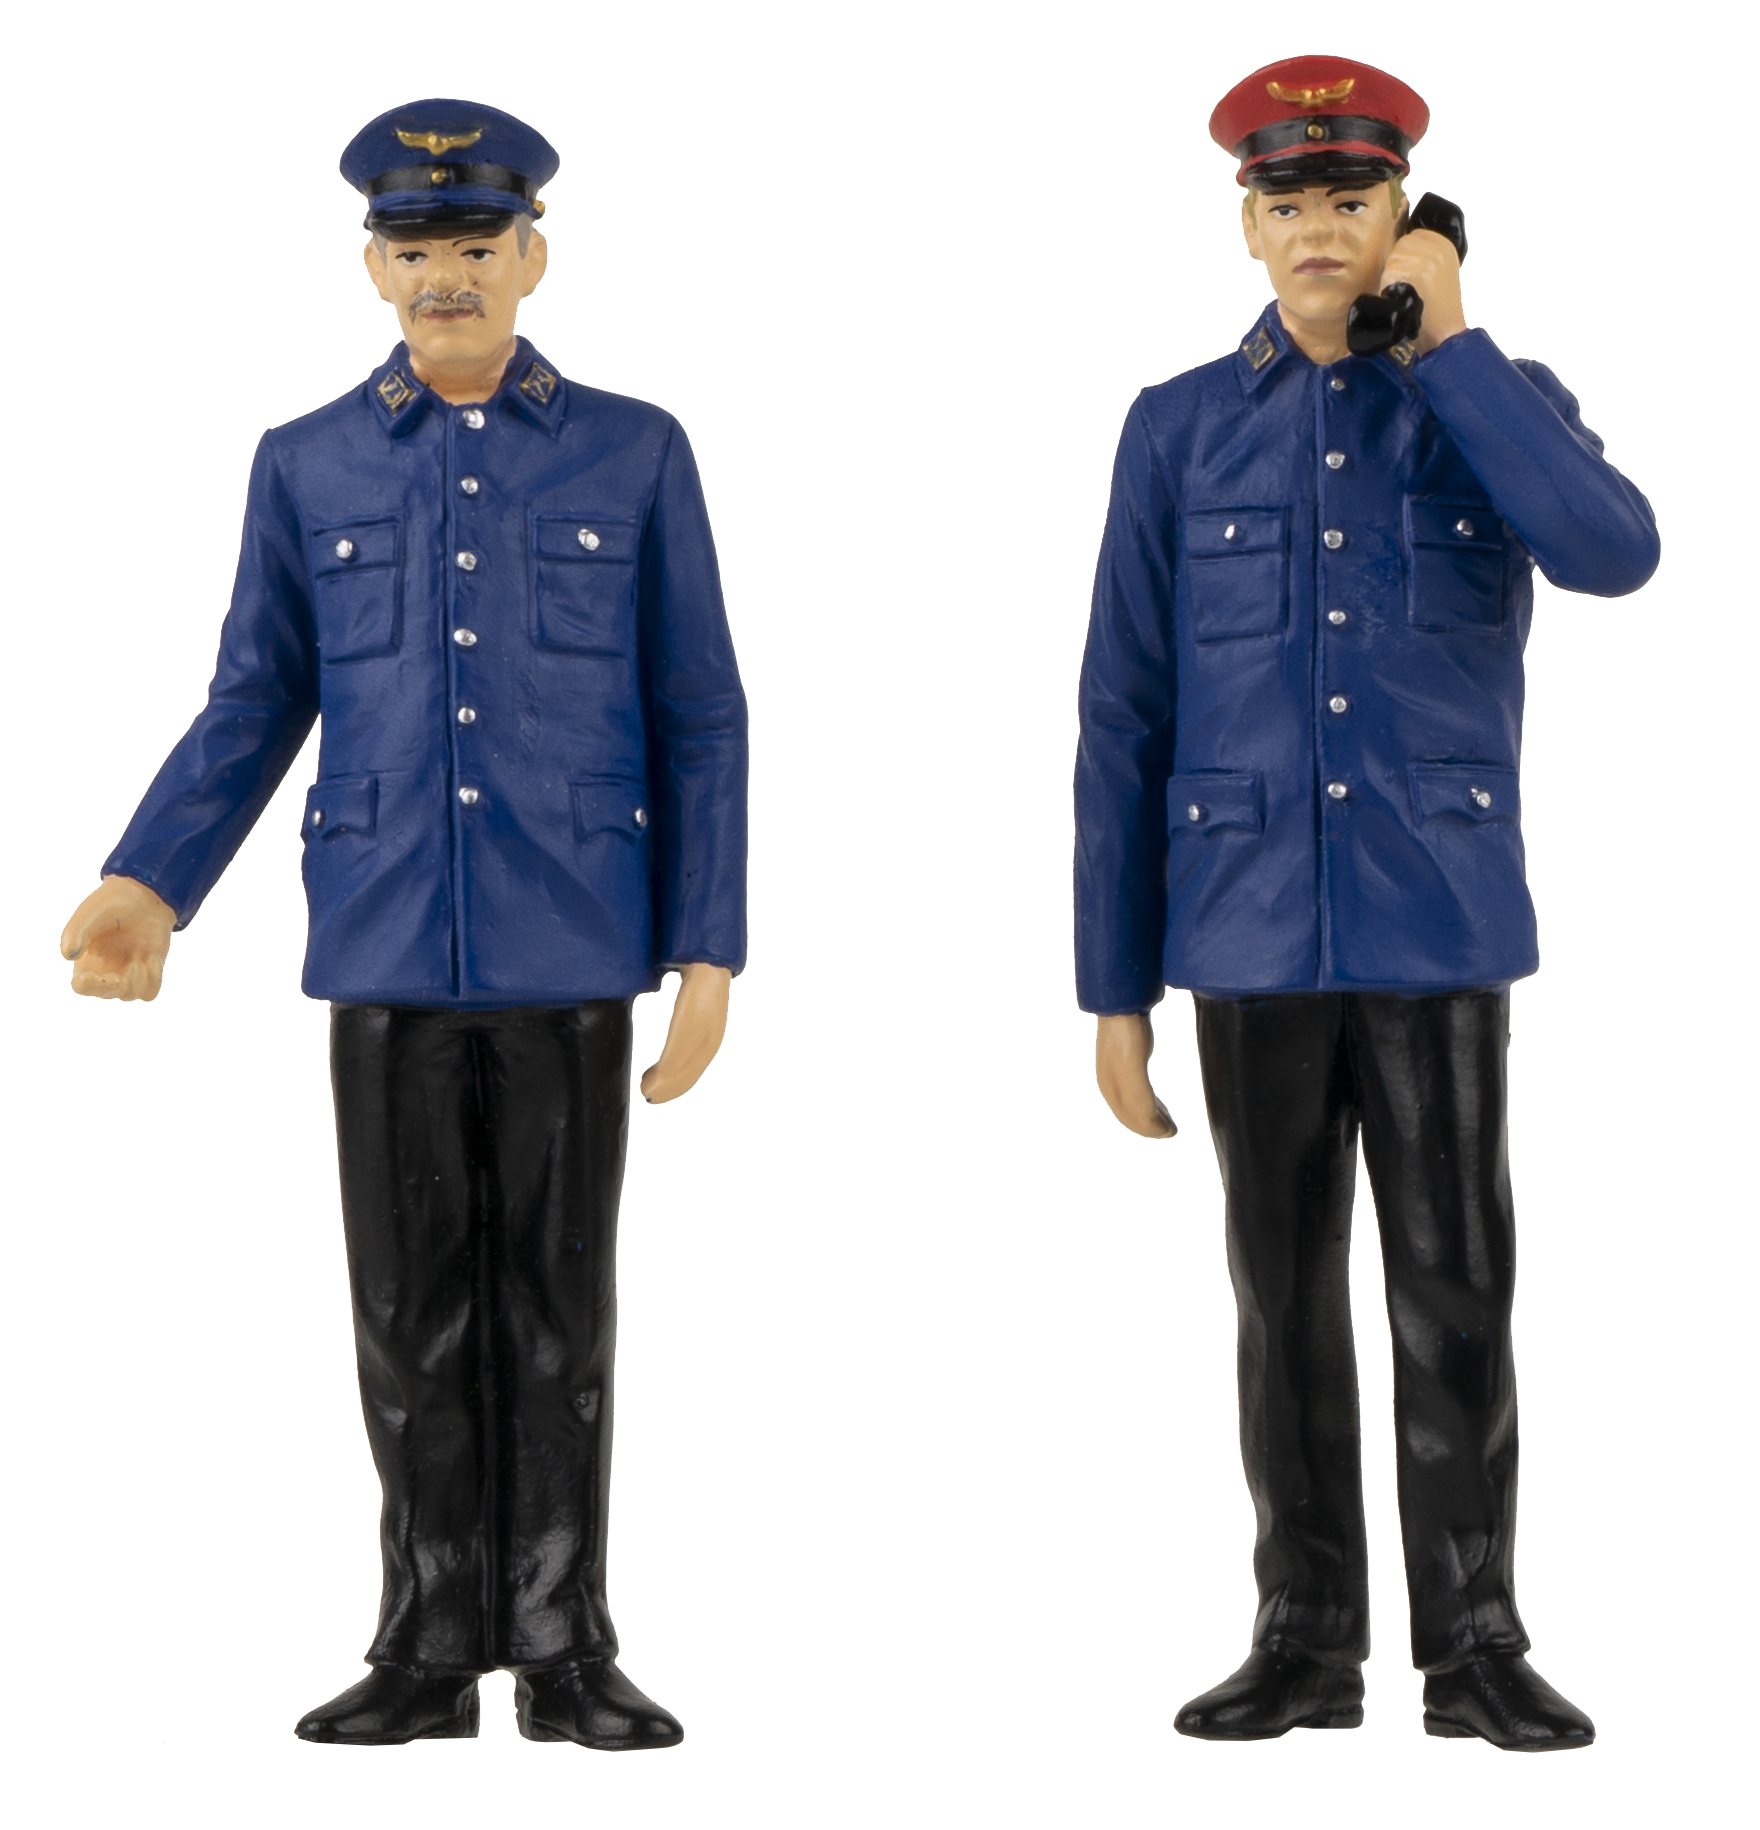 Art. Nr. 331521 - Zwei Fahrdienstleiter in Uniform mit schwarzer Hose und blauem Rock. Ein Fahrdienstleiter mit blauer Mtze. Der andere Fahrdienstleiter - mit roter Mtze - hat noch den Telefonhrer in der Hand. 